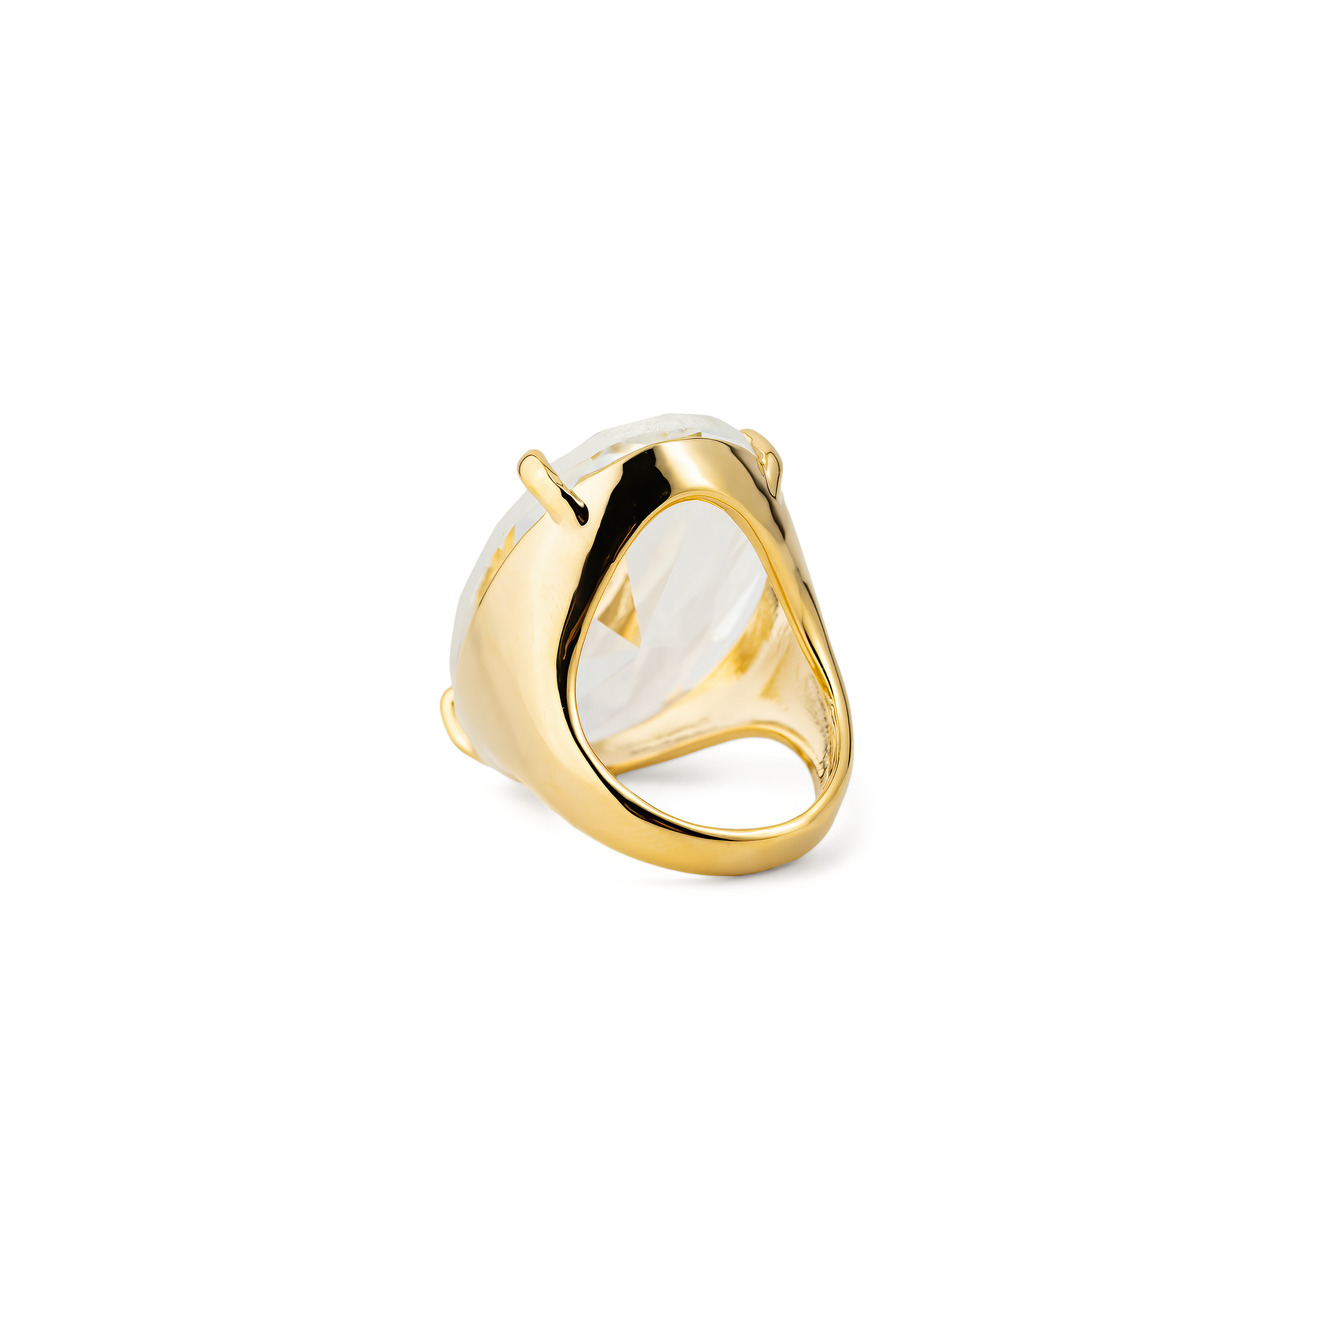 Herald Percy Золотистое кольцо с овальным кристаллом herald percy красное кольцо калиграфия с кристаллом